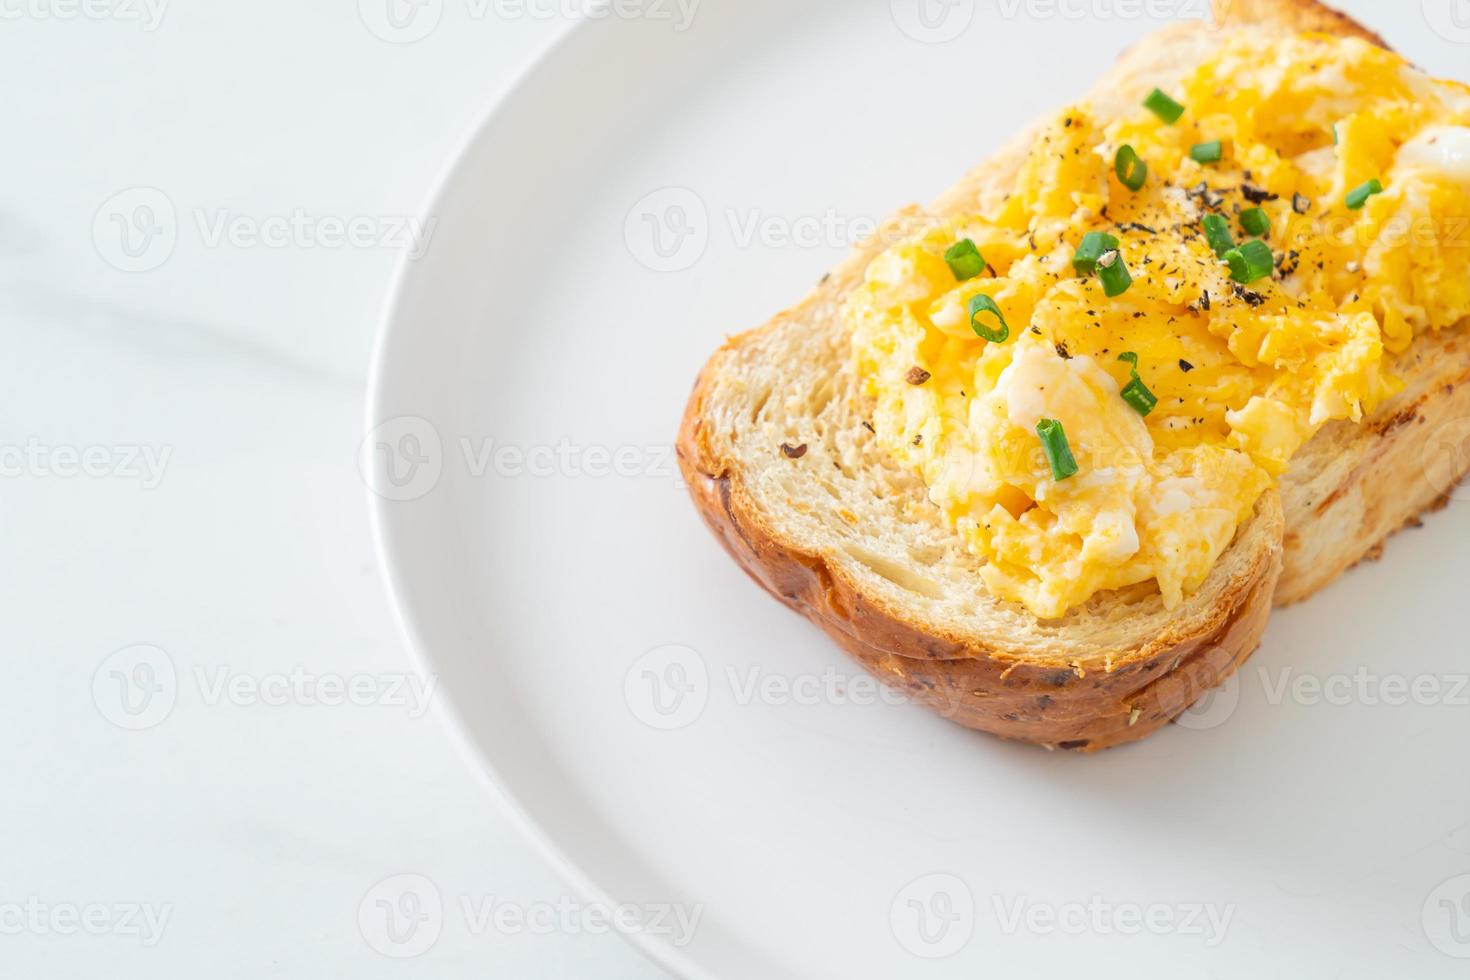 torrada de pão com ovo mexido no prato branco foto